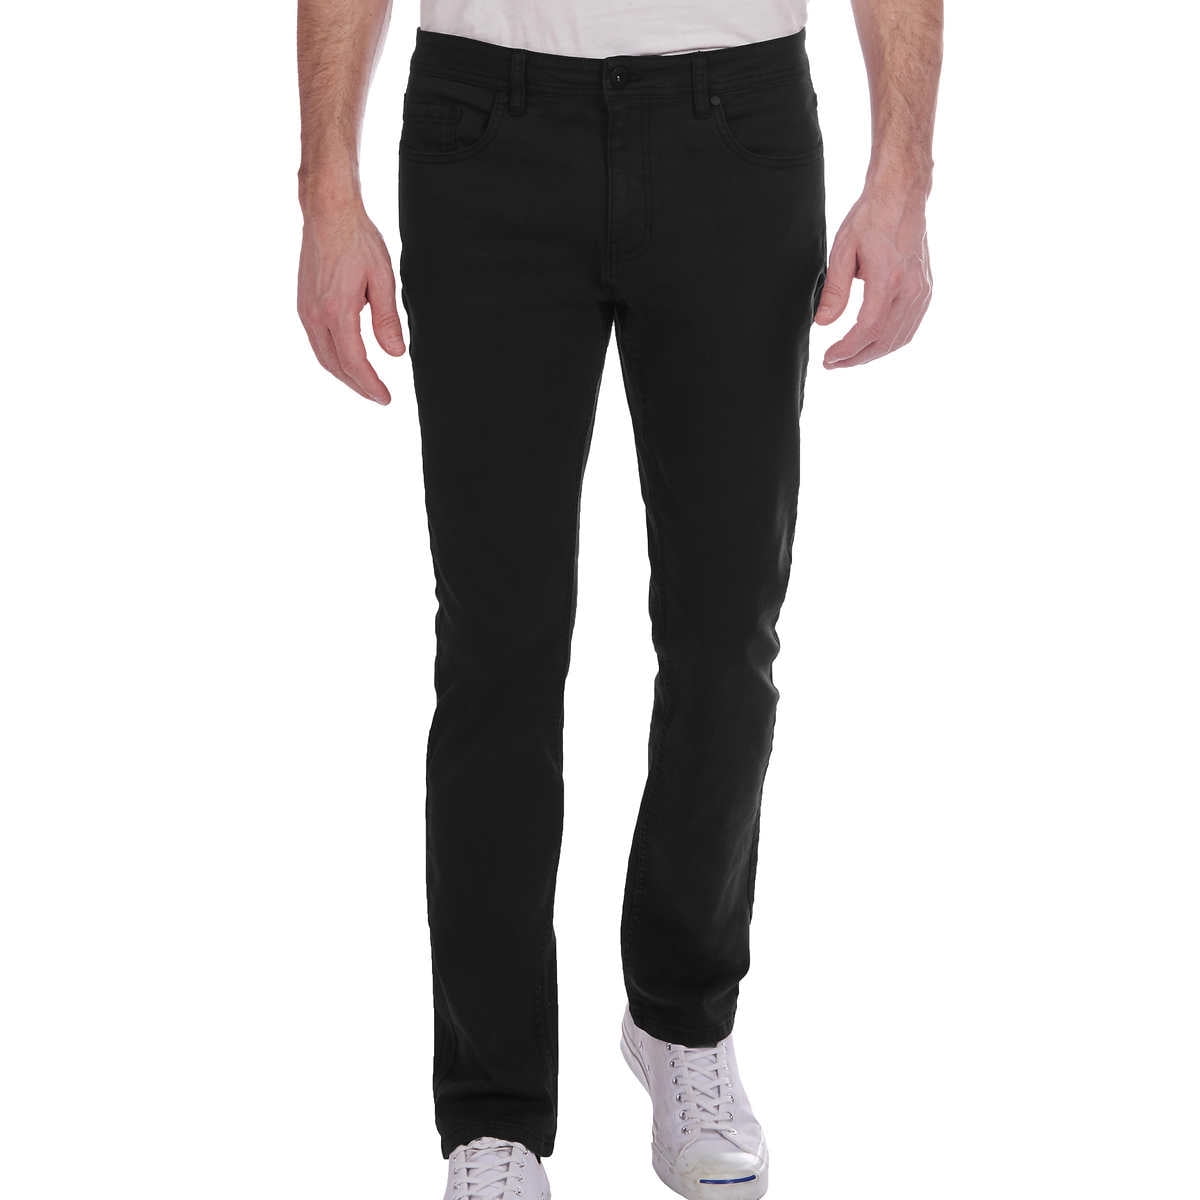 Jachs Men’s 5 Pocket Stretch Pant (Black, 32W x 32L)